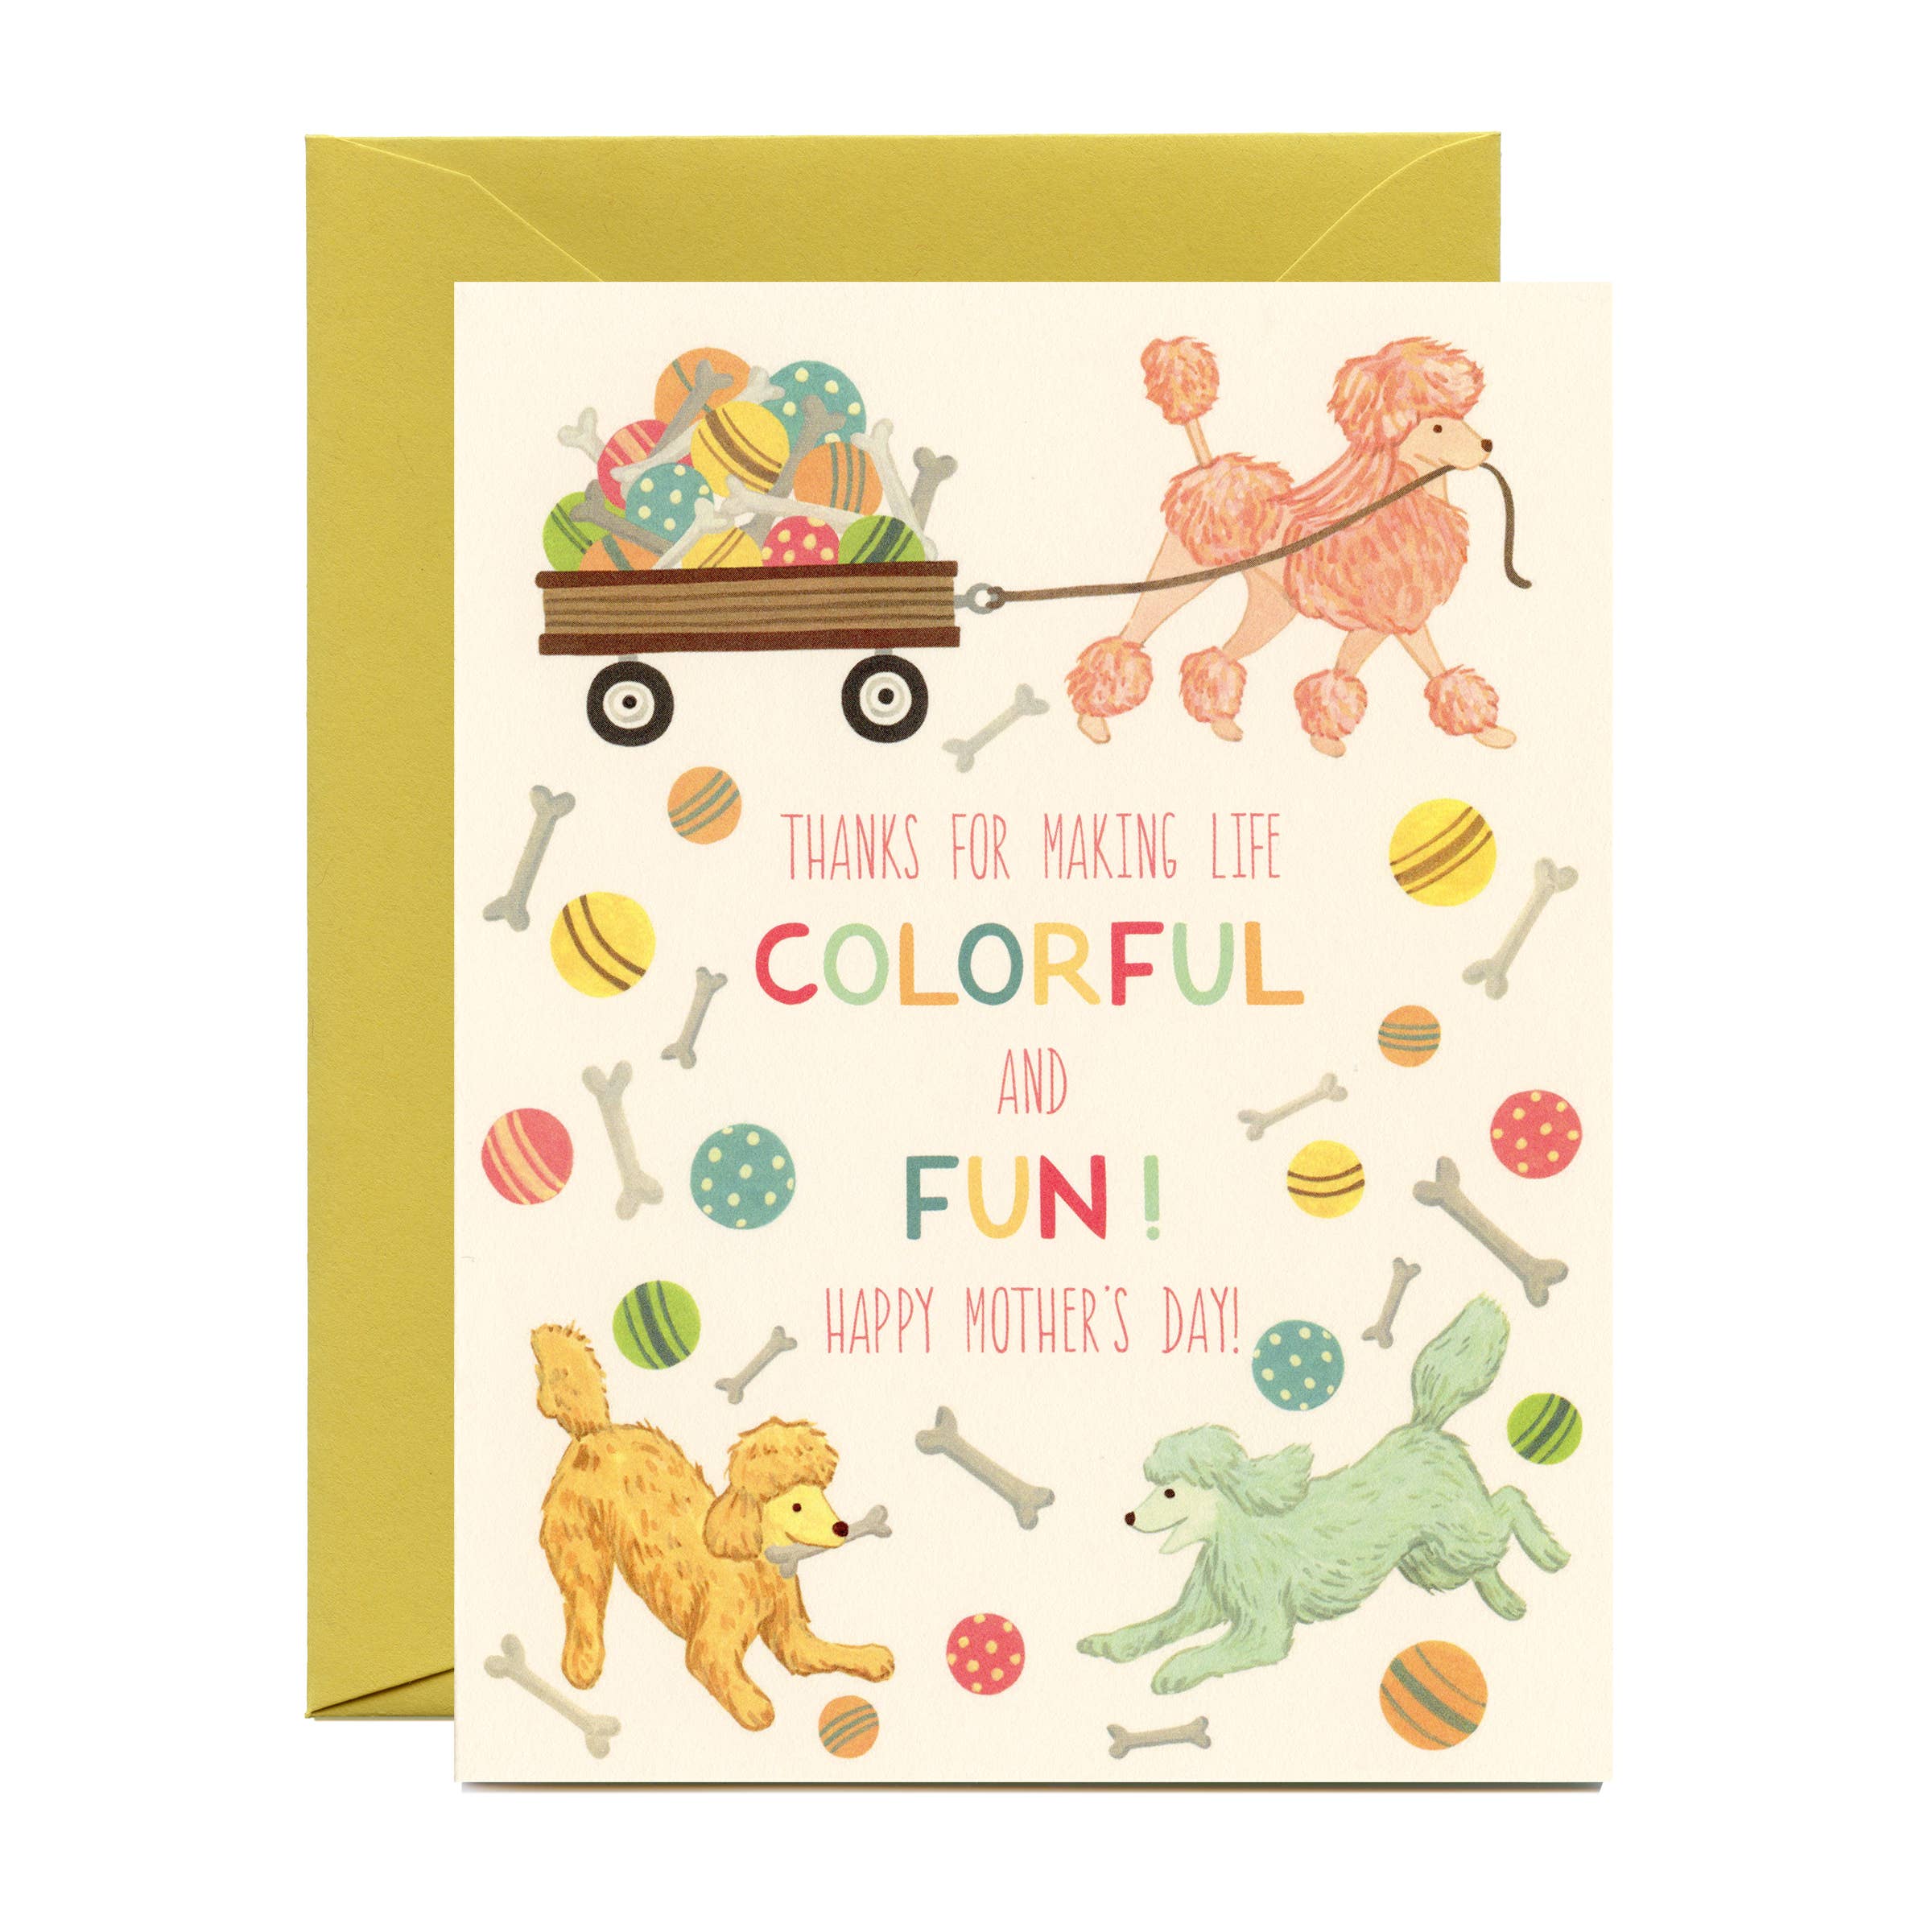 Coloré Kit de batterie blanc Carte de vœux avec Enveloppe